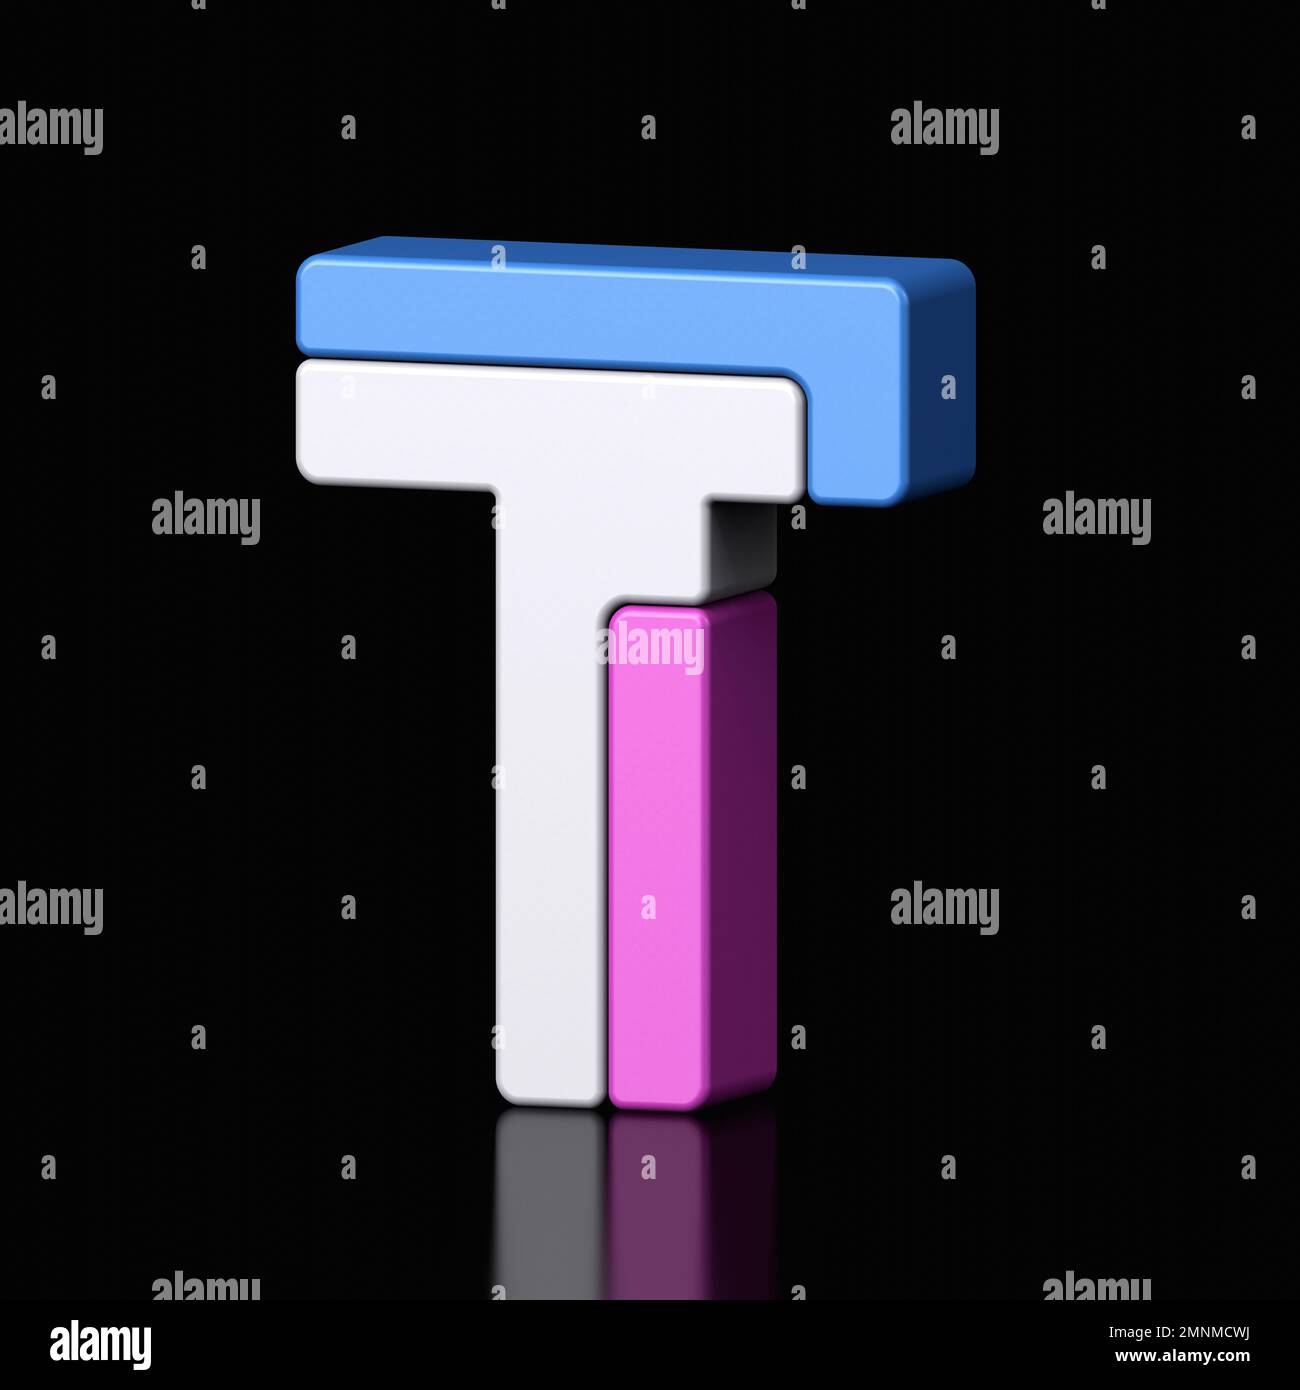 3D lettres T plastique bleu clair et rose de l'alphabet isolé dans un fond noir. Illustration de la conception de caractères métalliques haute technologie, texte minimal Banque D'Images